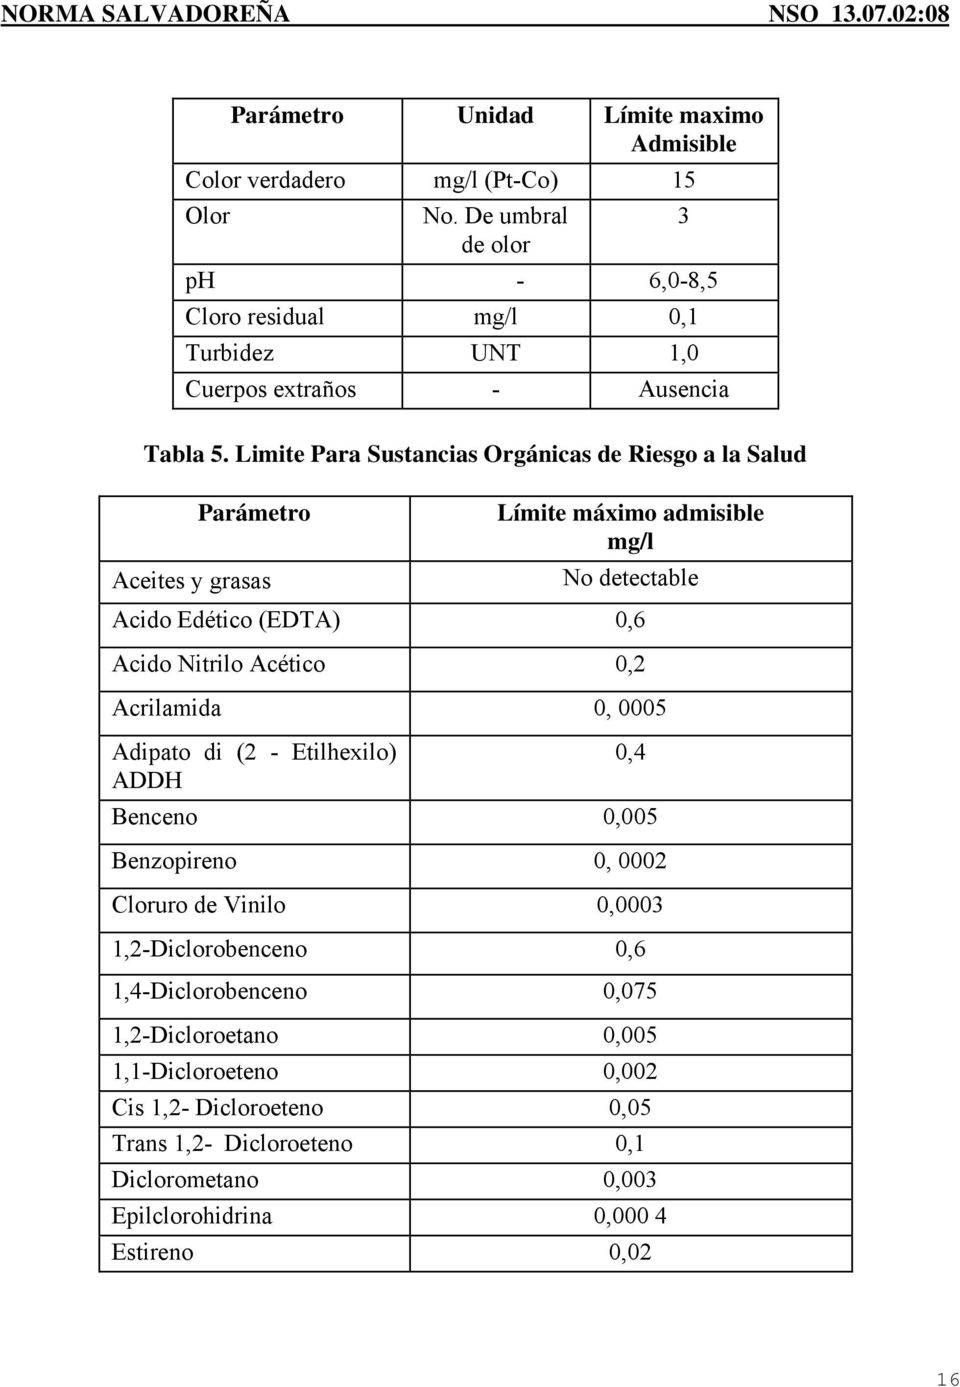 Limite Para Sustancias Orgánicas de Riesgo a la Salud Parámetro Aceites y grasas Límite máximo admisible mg/l No detectable Acido Edético (EDTA) 0,6 Acido Nitrilo Acético